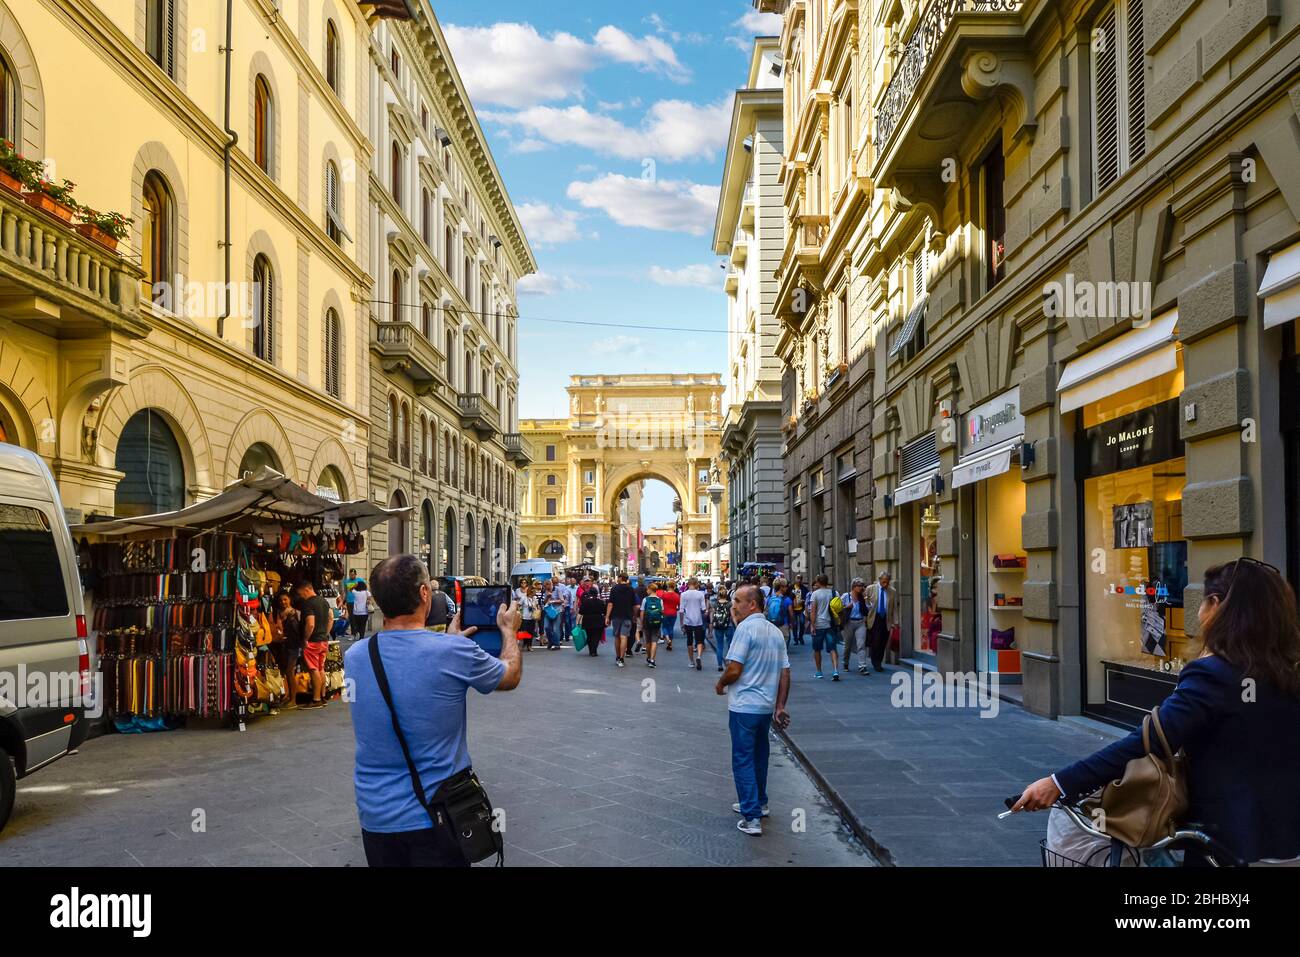 L'homme de prendre une photo avec une tablette comme il suit un groupe de personnes à marcher en direction de la Piazza della Repubblica à Florence Italie Banque D'Images